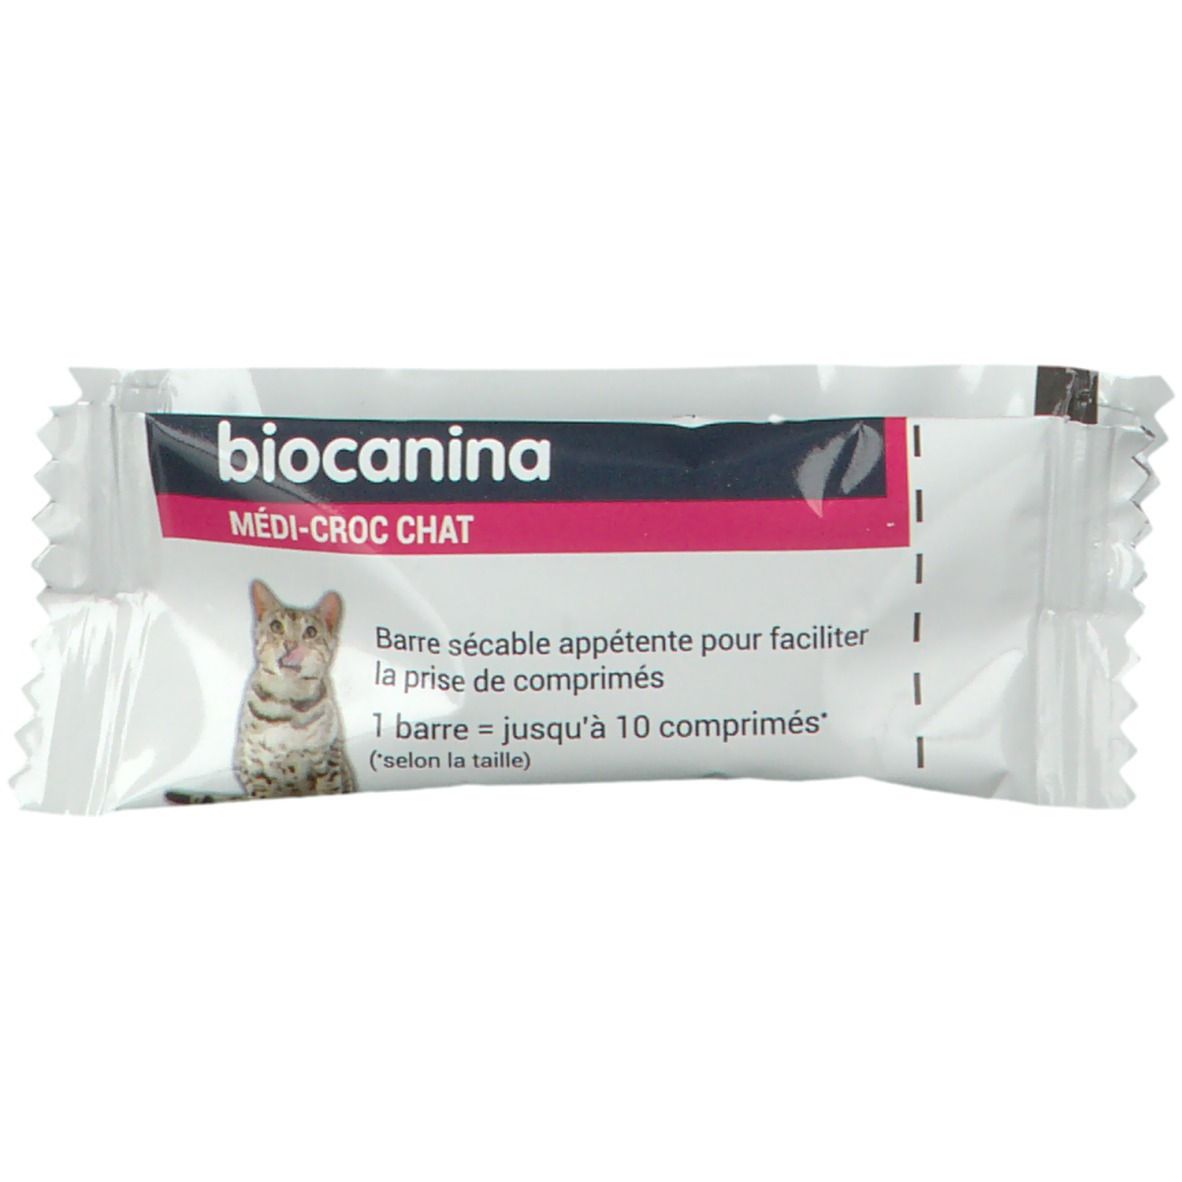 Image of Biocanina MEDI-CROC CHAT Bar